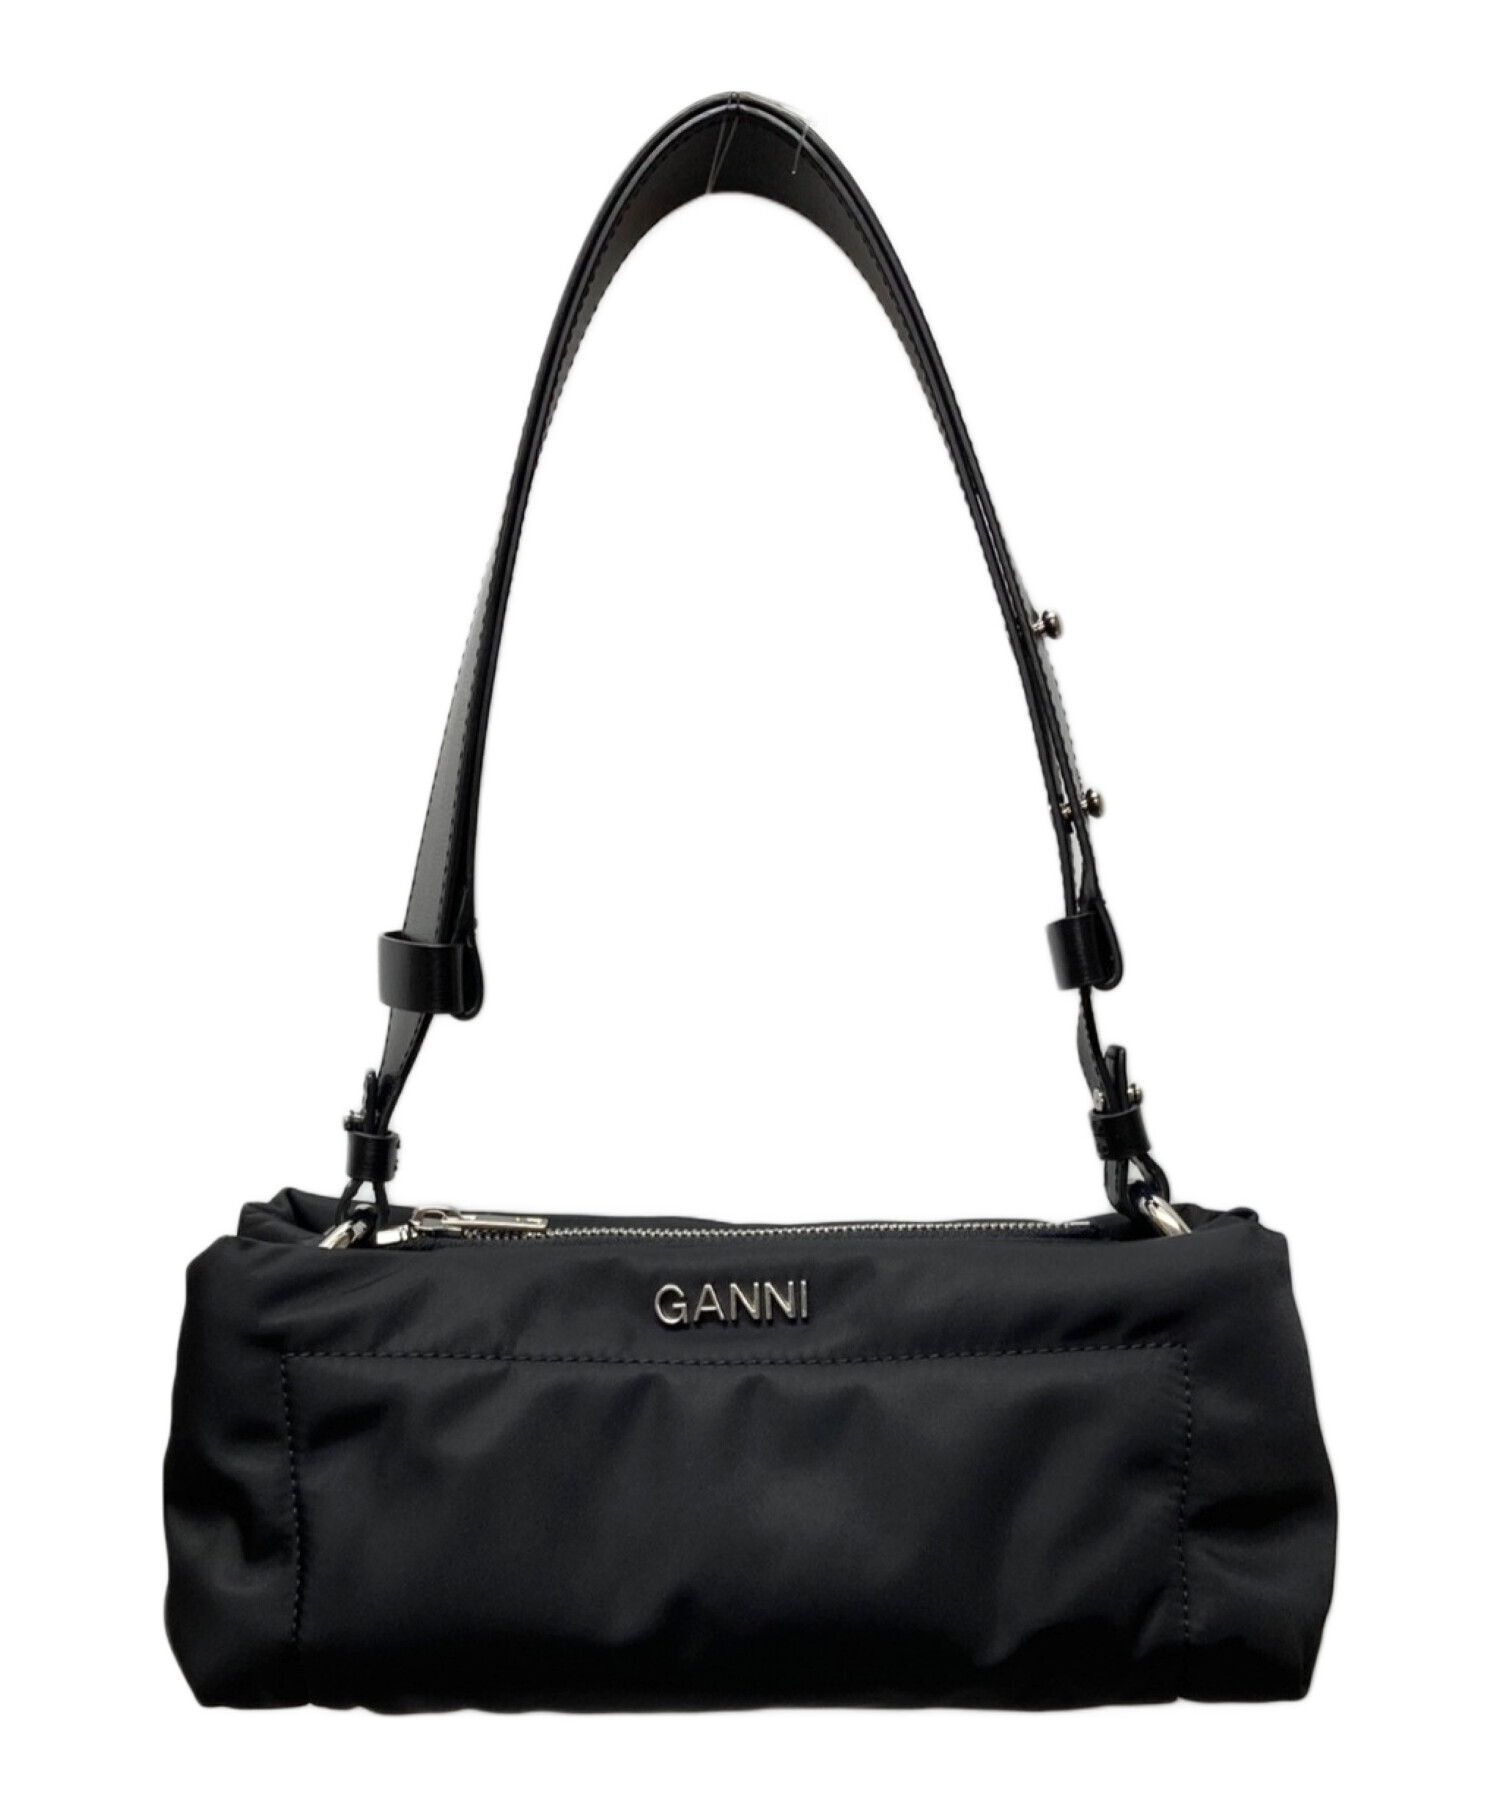 GANNI (ガニー) Pillow handle Bag ブラック